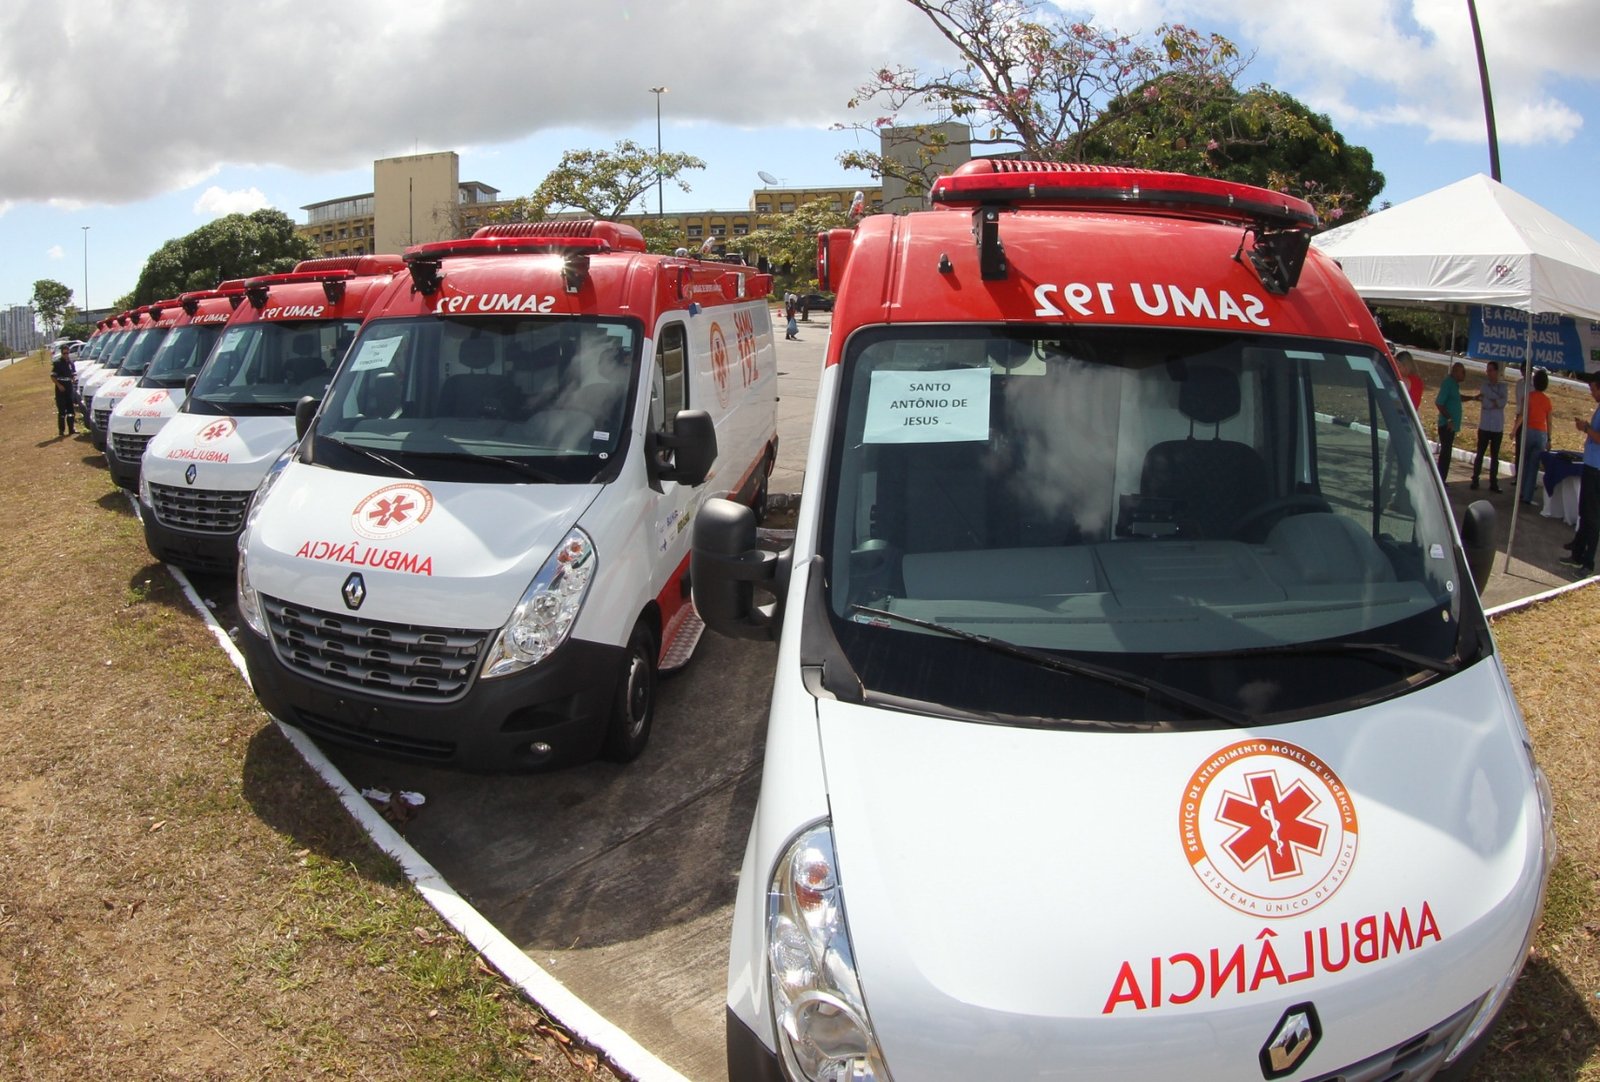 Interior conta com novas ambulâncias do Samu